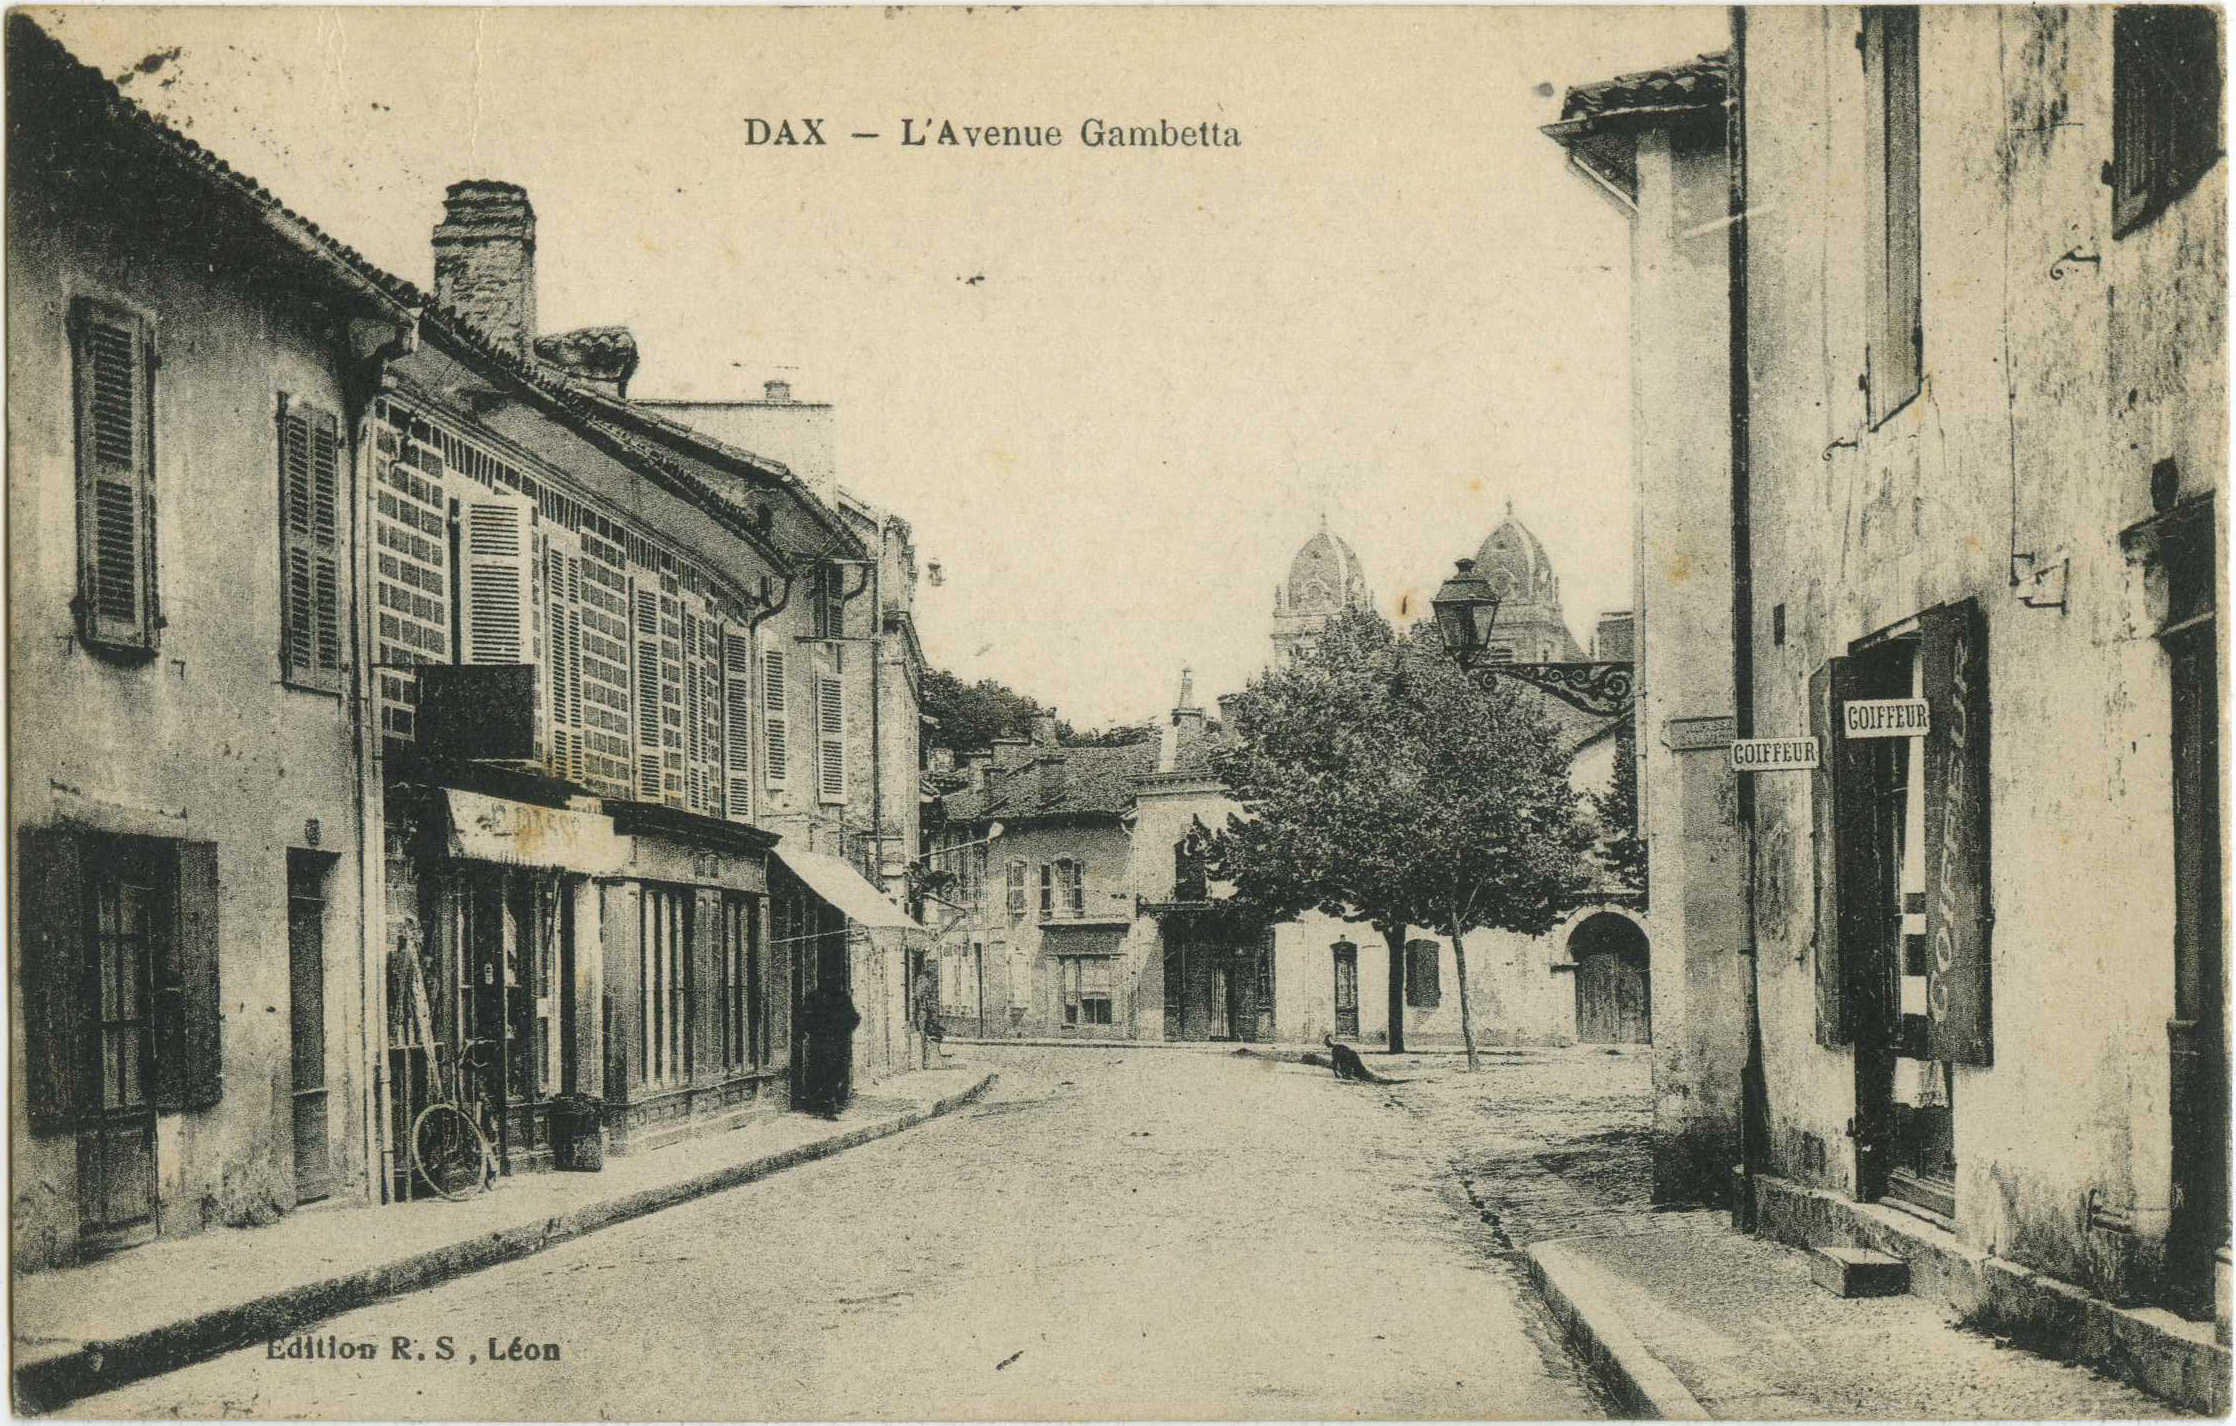 Dax - L'Avenue Gambetta